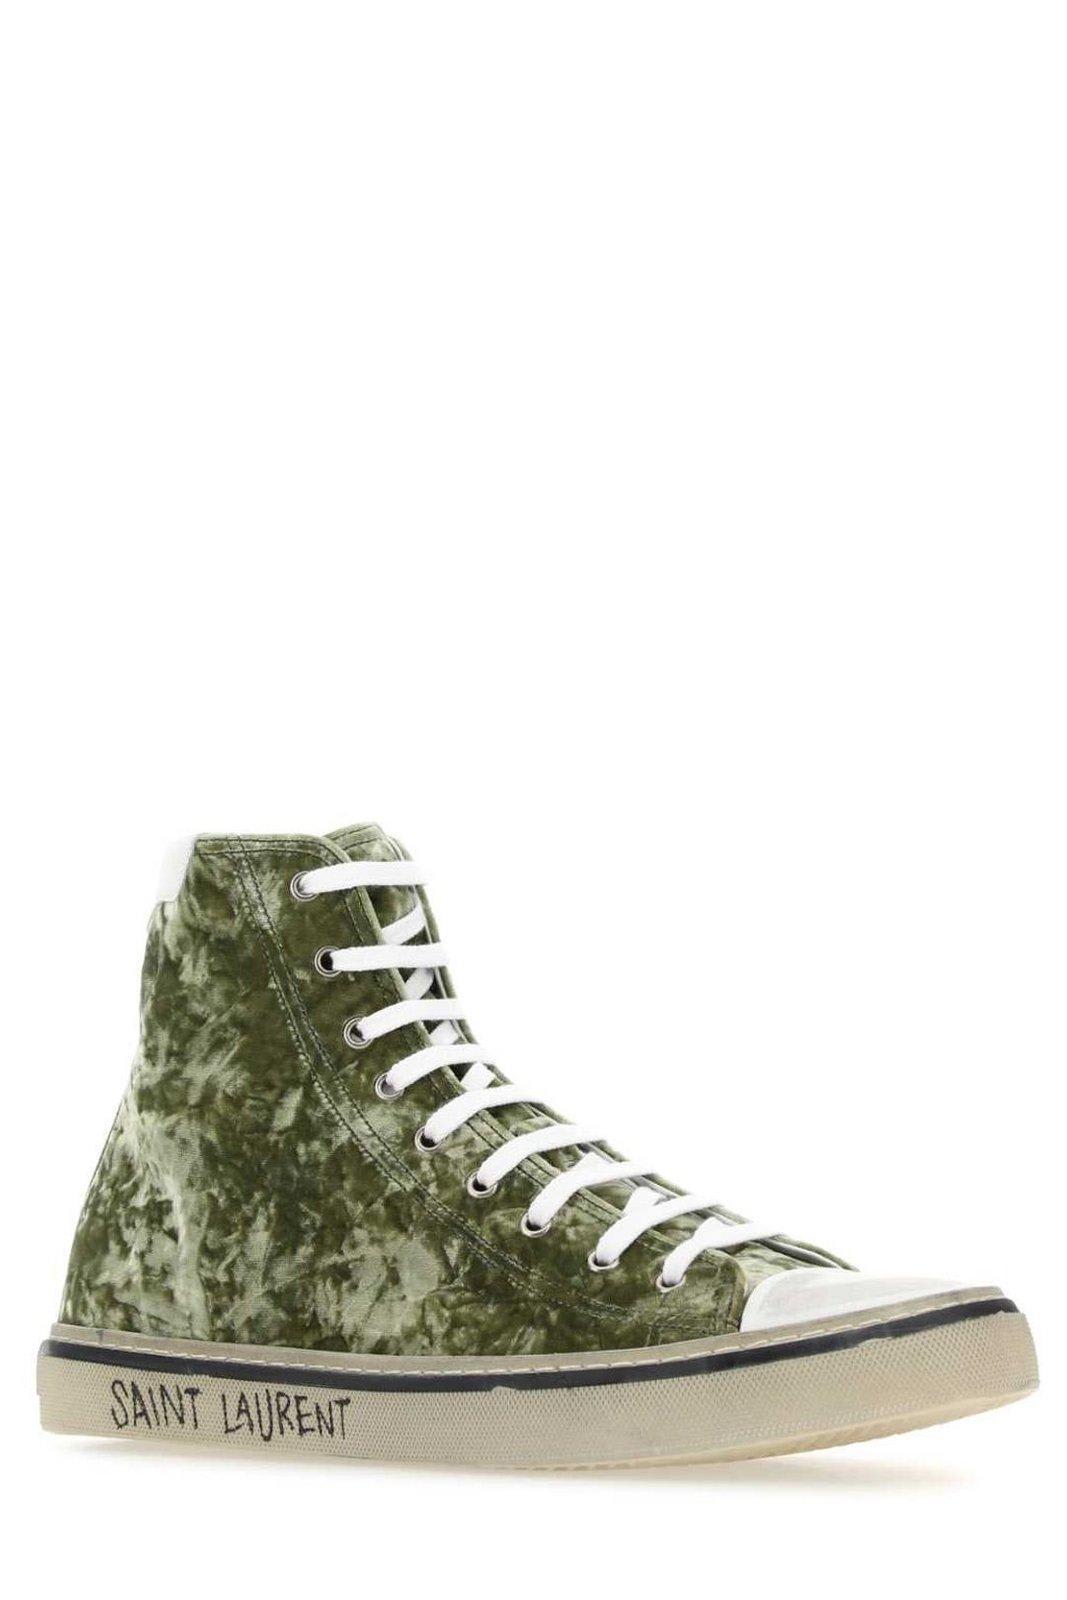 Shop Saint Laurent Malibu Mid-top Sneakers In Green